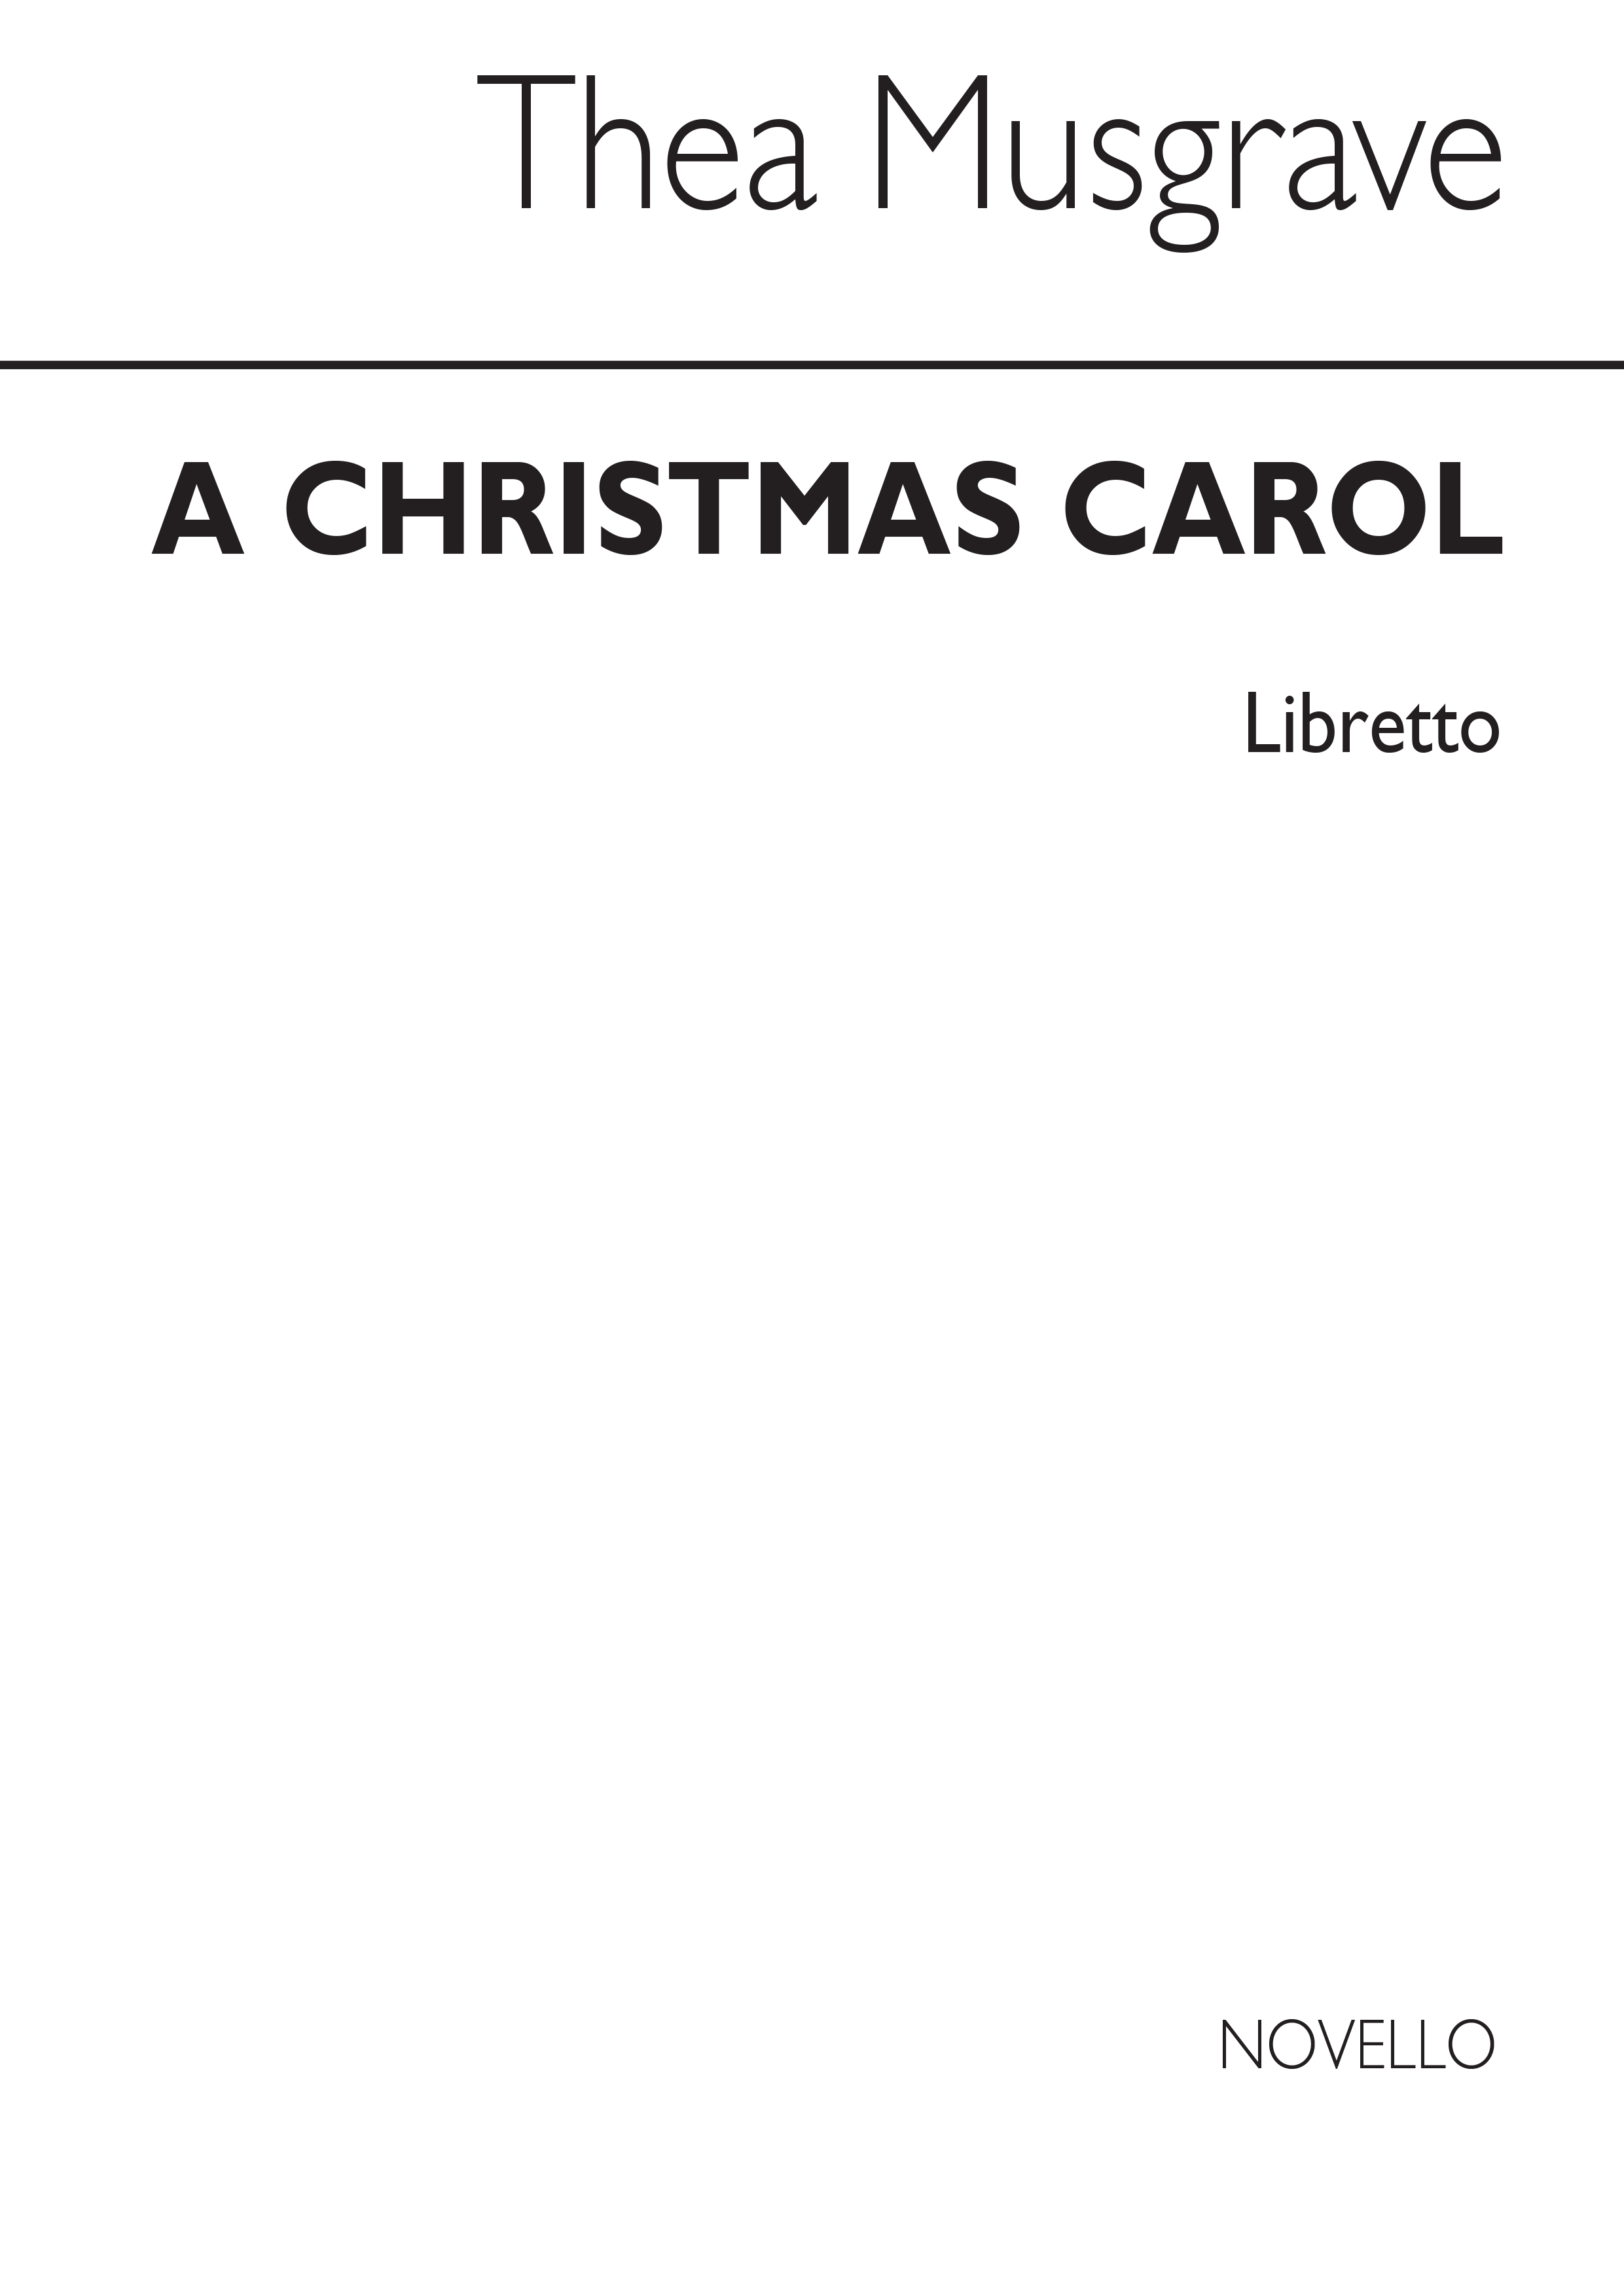 Musgrave: Christmas Carol (Libretto)